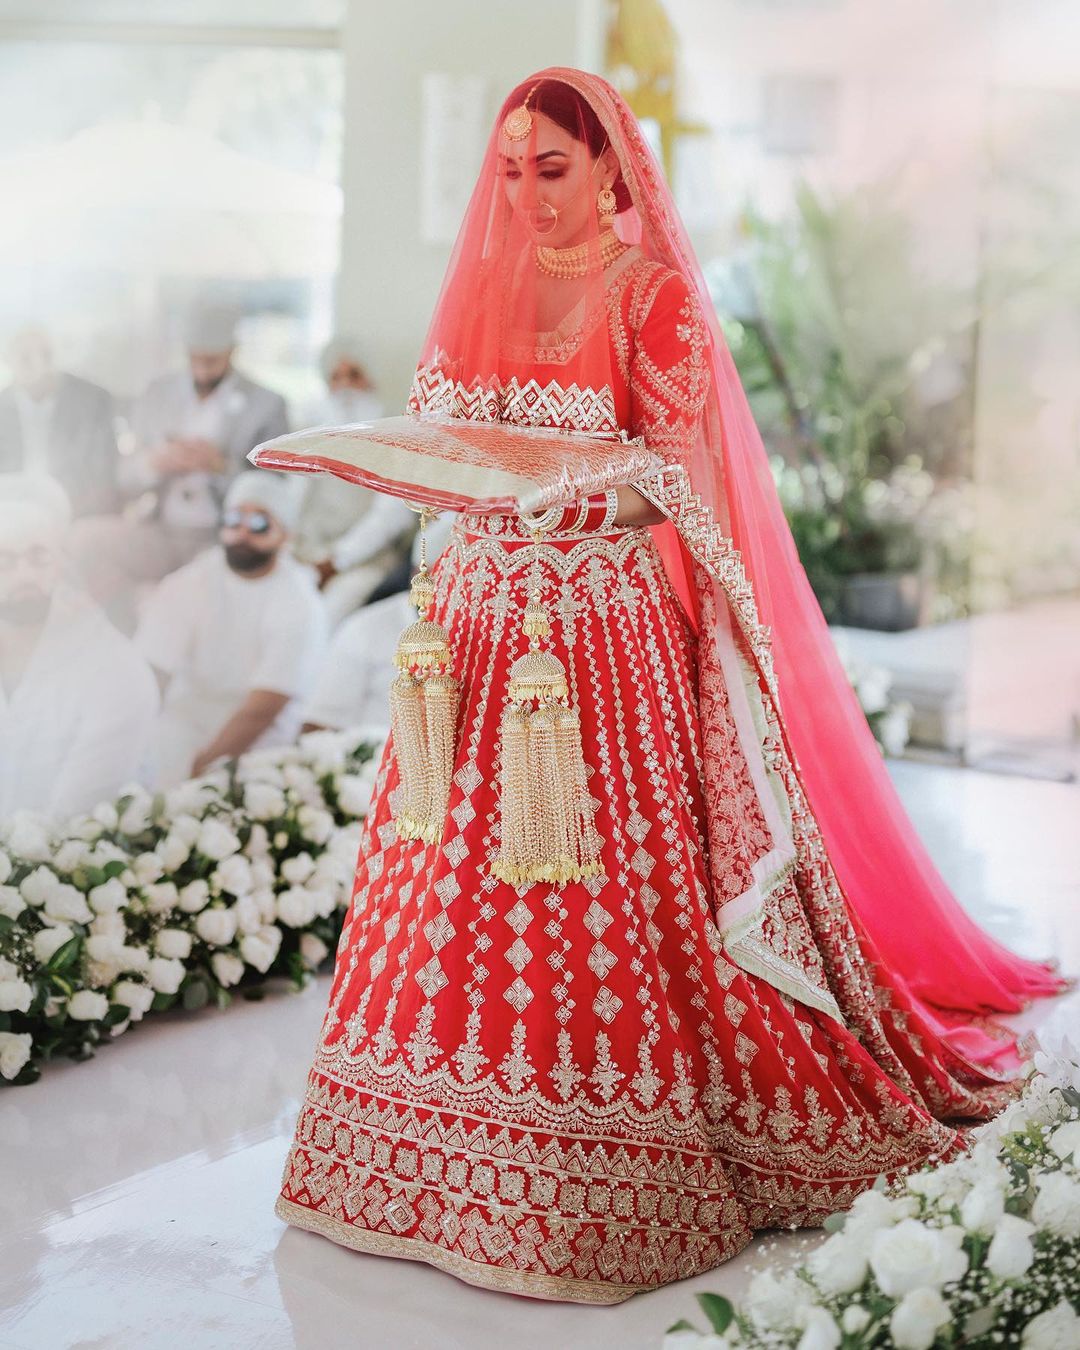 Lehenga by Manish Malhotra, different types of manish malhotra lehenga | Manish  malhotra lehenga, Indian fashion designers, Bridal lehenga